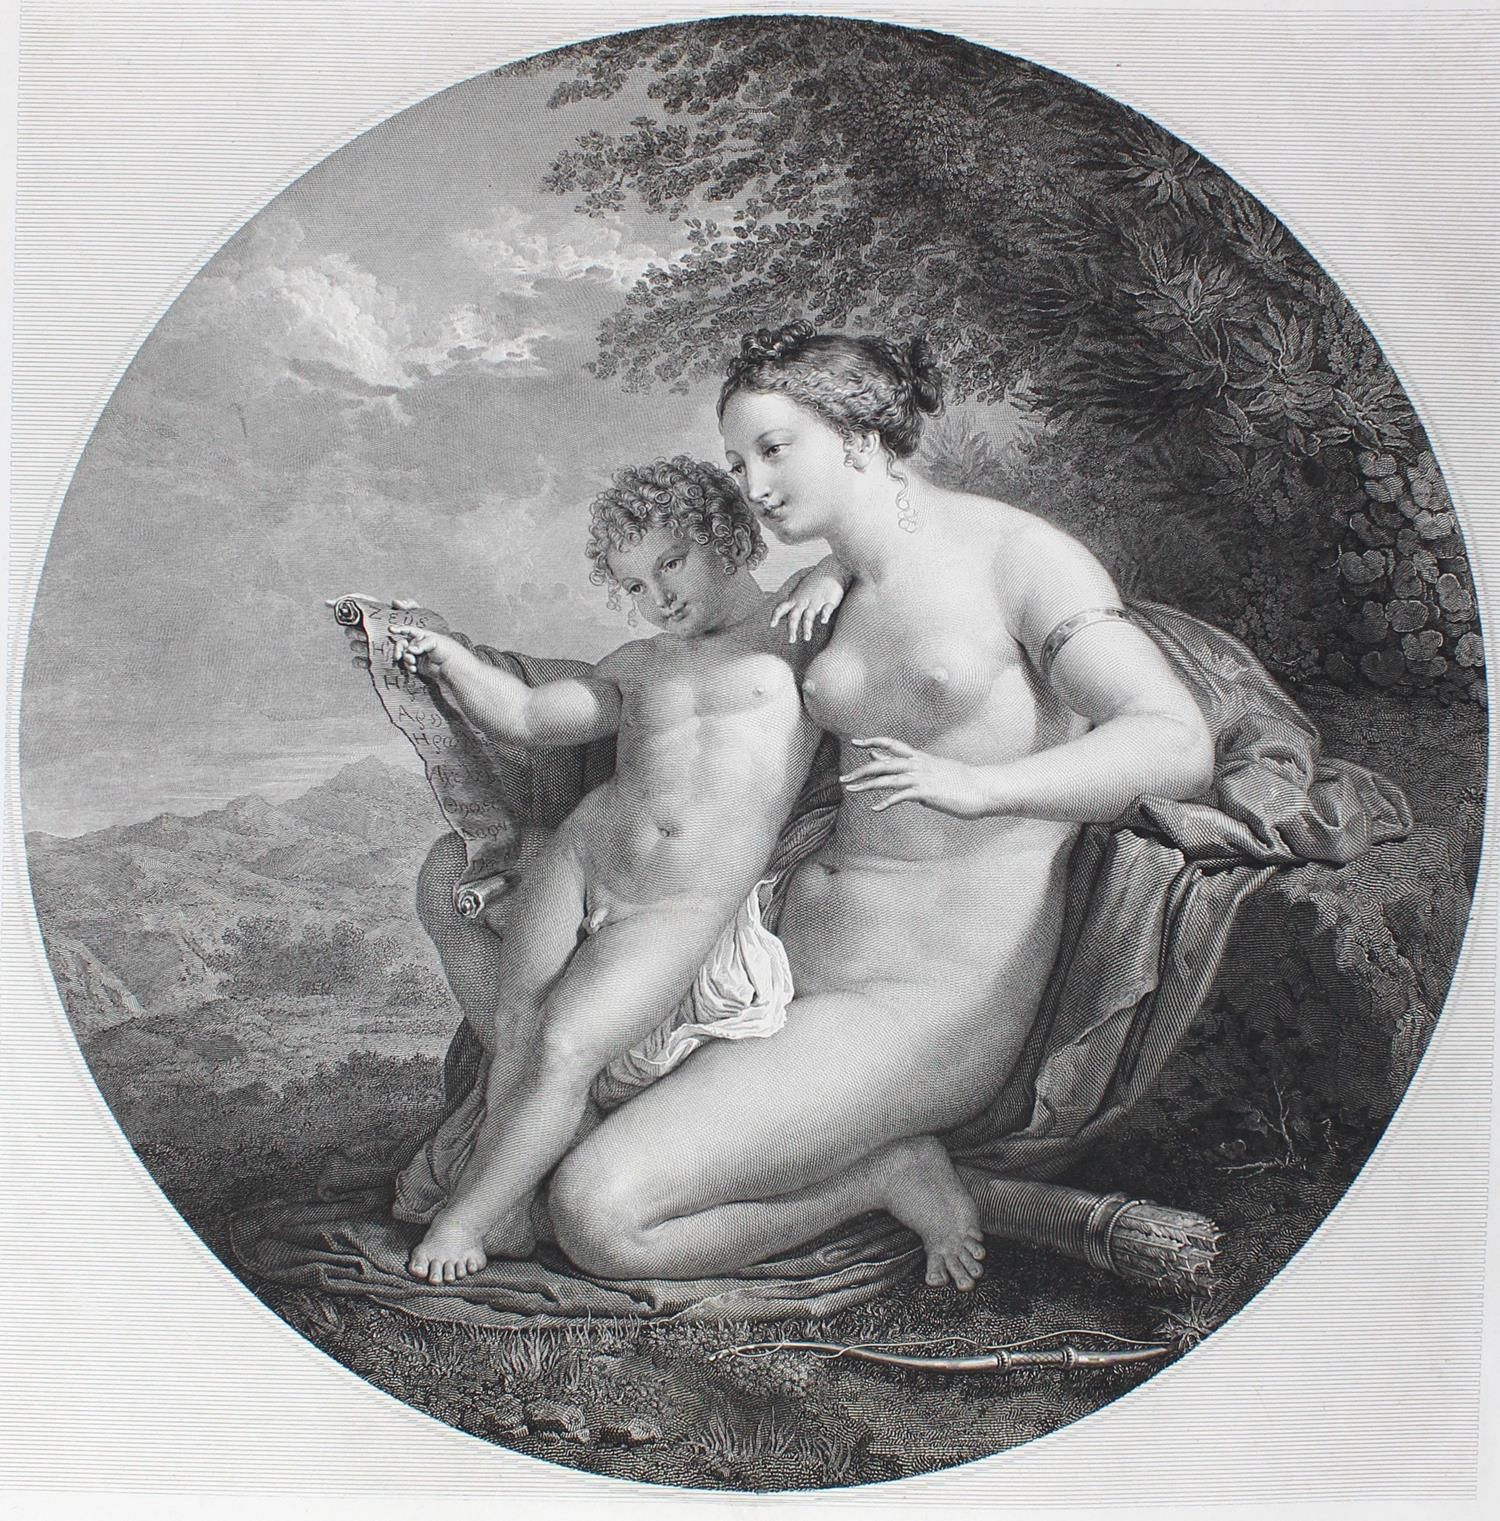 Anonym. 维纳斯和丘比特。铜版画。18世纪。80,5 x 62,4厘米。白边有轻微的污点。 R